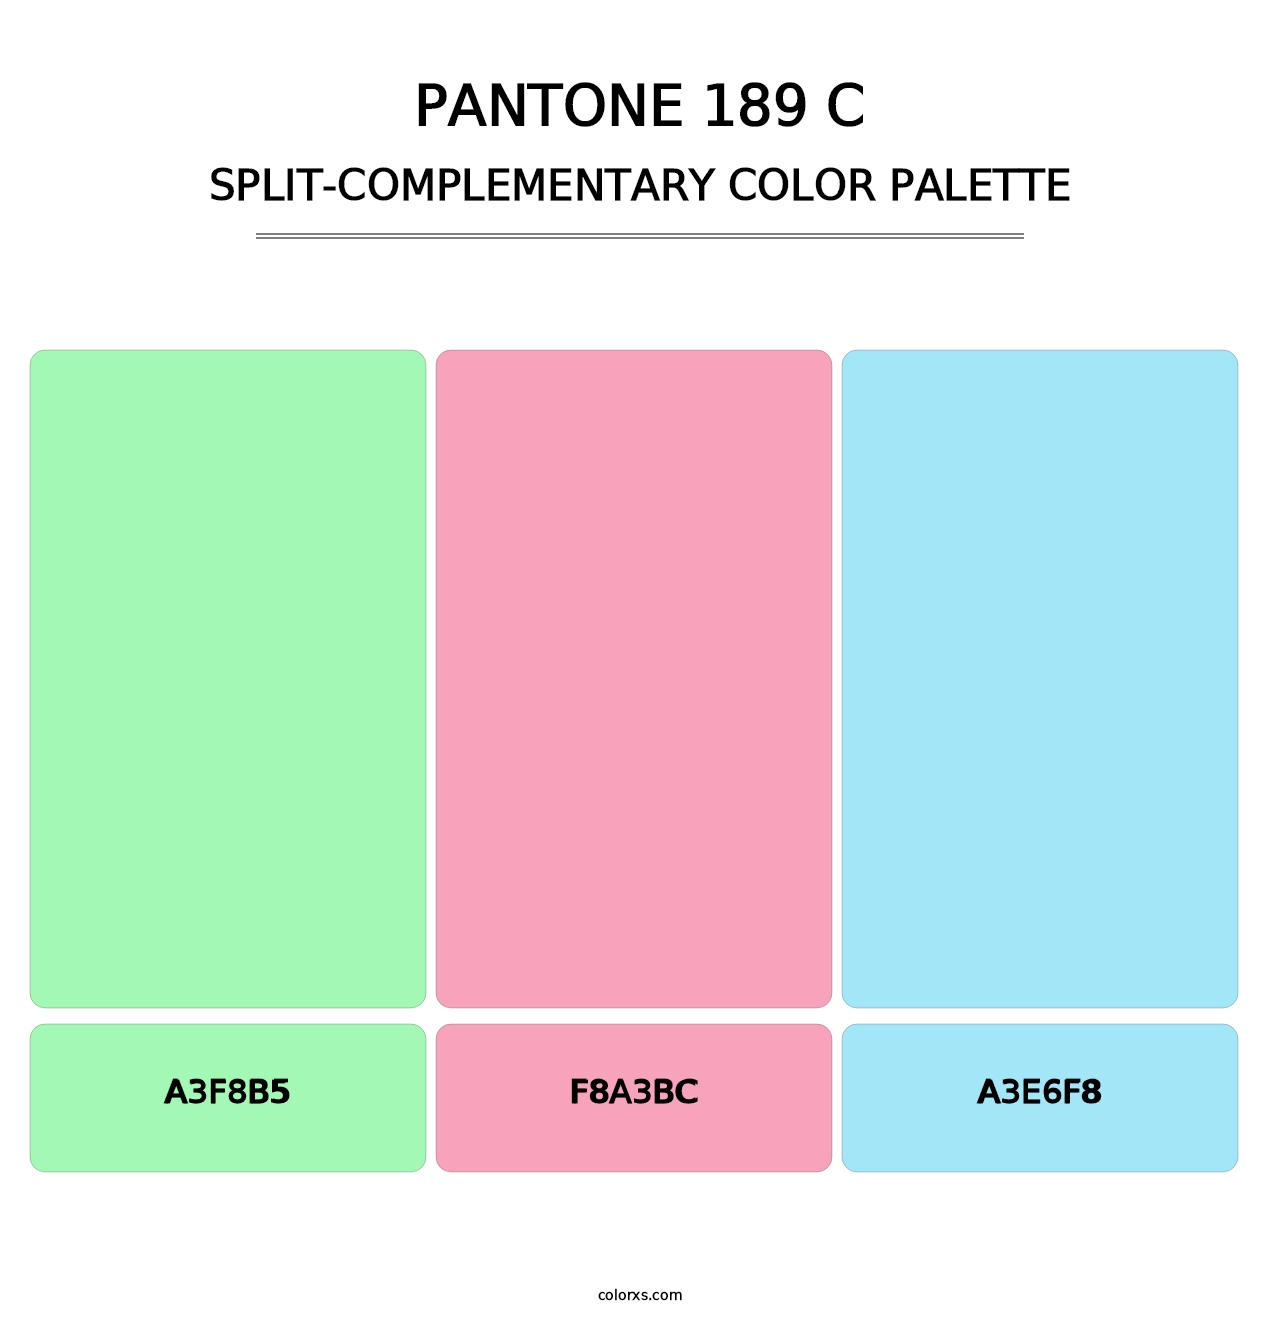 PANTONE 189 C - Split-Complementary Color Palette